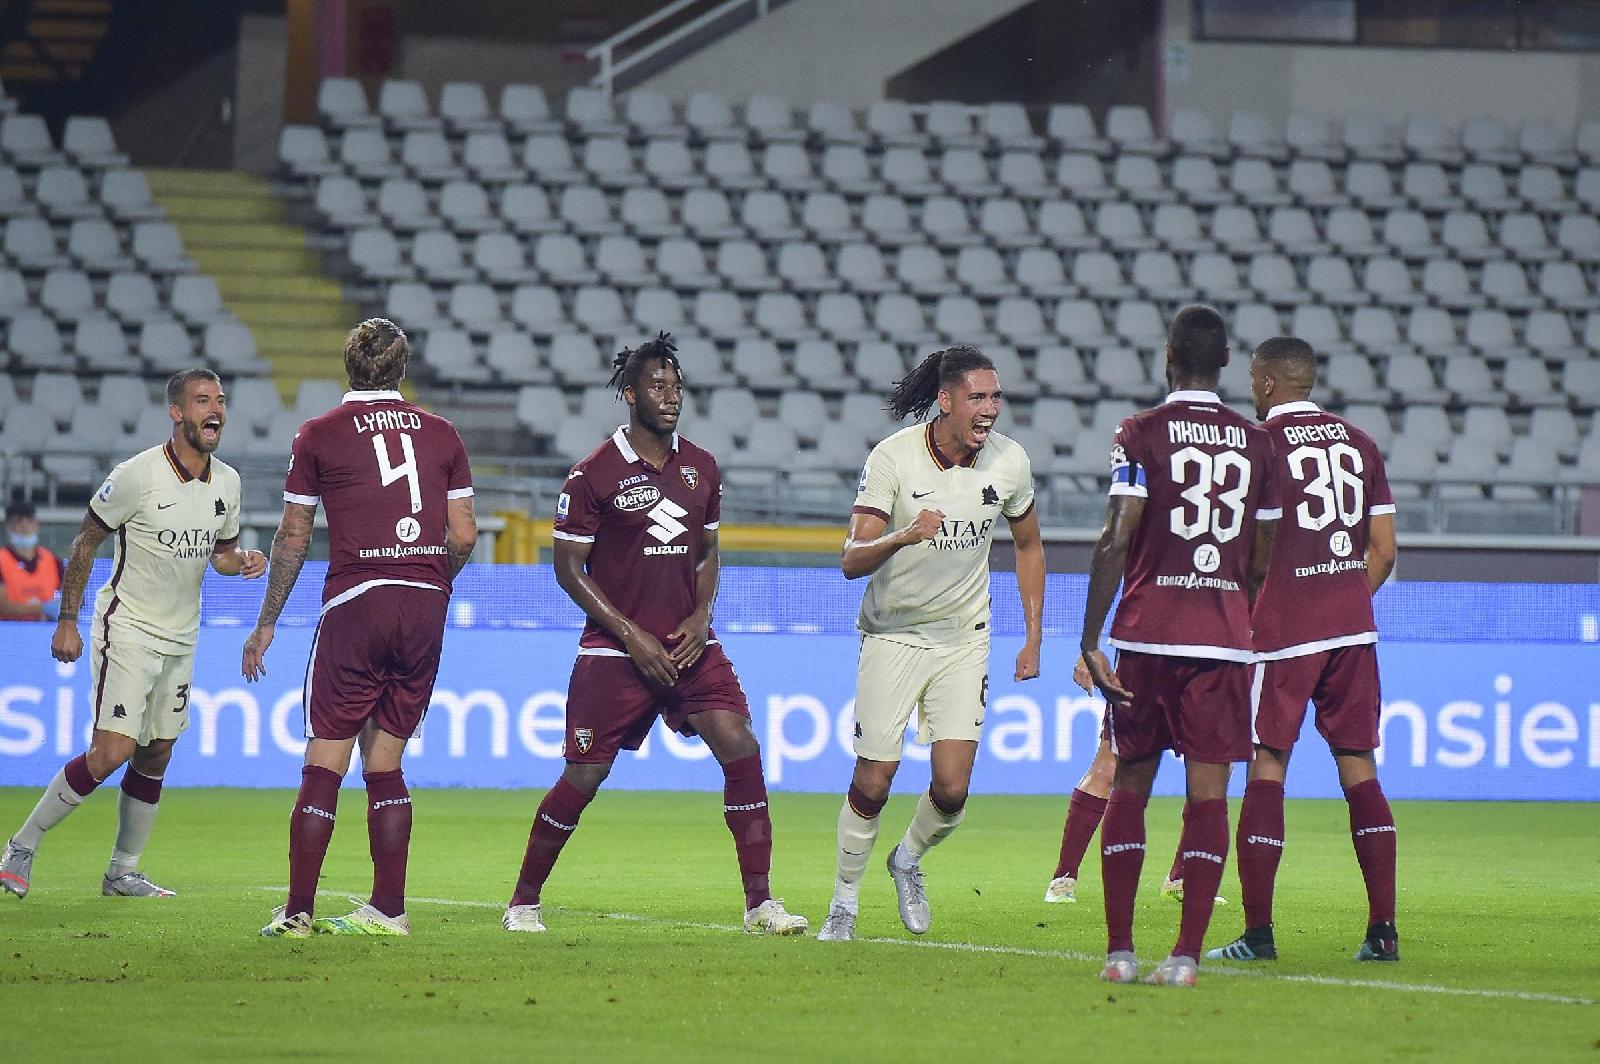 Smalling esulta dopo aver segnato la rete contro il Torino ©LaPresse